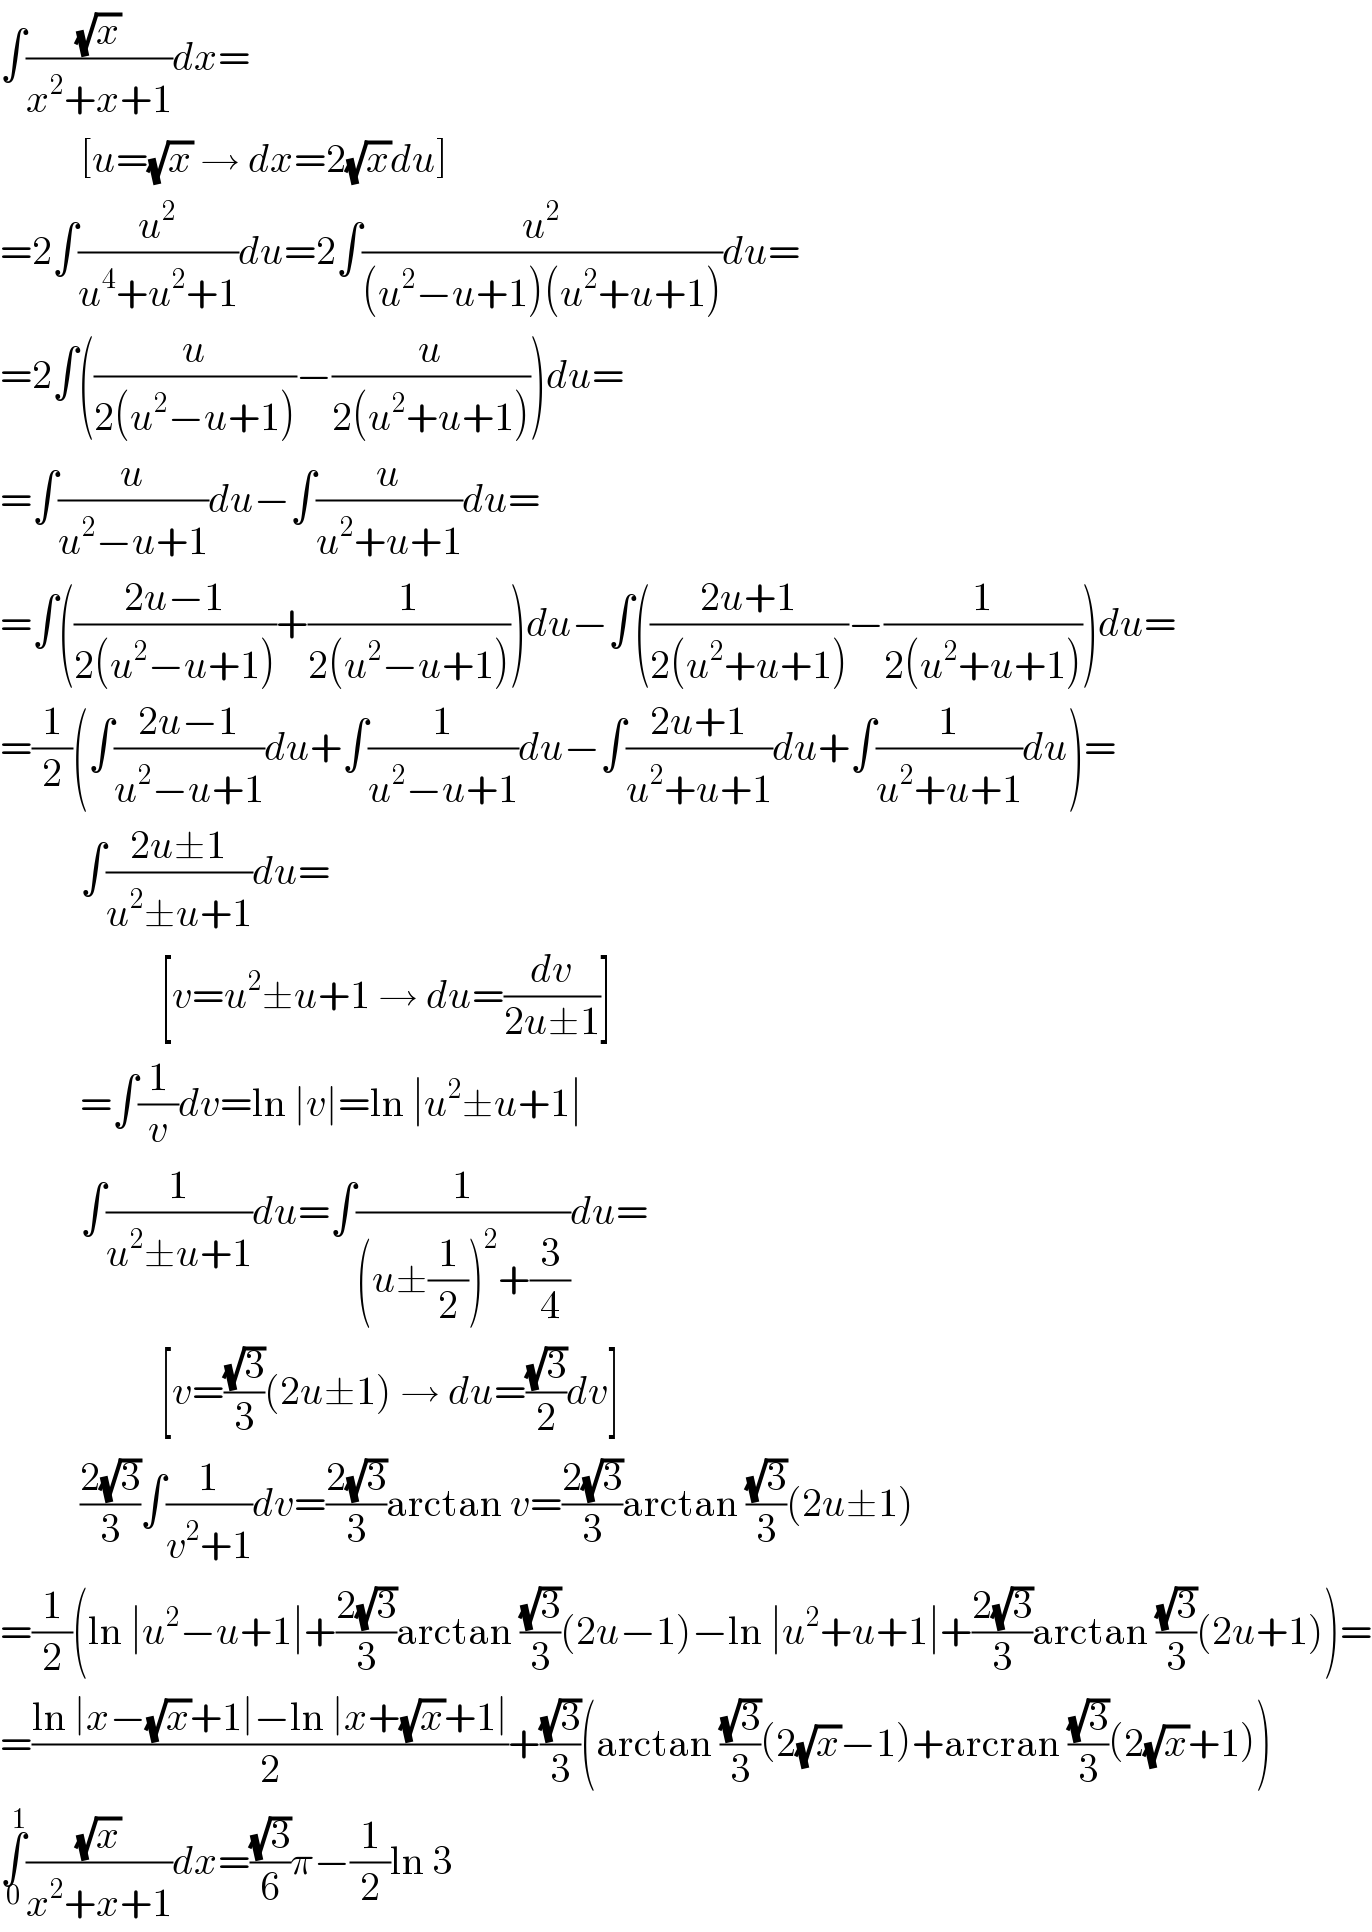 ∫((√x)/(x^2 +x+1))dx=            [u=(√x) → dx=2(√x)du]  =2∫(u^2 /(u^4 +u^2 +1))du=2∫(u^2 /((u^2 −u+1)(u^2 +u+1)))du=  =2∫((u/(2(u^2 −u+1)))−(u/(2(u^2 +u+1))))du=  =∫(u/(u^2 −u+1))du−∫(u/(u^2 +u+1))du=  =∫(((2u−1)/(2(u^2 −u+1)))+(1/(2(u^2 −u+1))))du−∫(((2u+1)/(2(u^2 +u+1)))−(1/(2(u^2 +u+1))))du=  =(1/2)(∫((2u−1)/(u^2 −u+1))du+∫(1/(u^2 −u+1))du−∫((2u+1)/(u^2 +u+1))du+∫(1/(u^2 +u+1))du)=            ∫((2u±1)/(u^2 ±u+1))du=                      [v=u^2 ±u+1 → du=(dv/(2u±1))]            =∫(1/v)dv=ln ∣v∣=ln ∣u^2 ±u+1∣            ∫(1/(u^2 ±u+1))du=∫(1/((u±(1/2))^2 +(3/4)))du=                      [v=((√3)/3)(2u±1) → du=((√3)/2)dv]            ((2(√3))/3)∫(1/(v^2 +1))dv=((2(√3))/3)arctan v=((2(√3))/3)arctan ((√3)/3)(2u±1)  =(1/2)(ln ∣u^2 −u+1∣+((2(√3))/3)arctan ((√3)/3)(2u−1)−ln ∣u^2 +u+1∣+((2(√3))/3)arctan ((√3)/3)(2u+1))=  =((ln ∣x−(√x)+1∣−ln ∣x+(√x)+1∣)/2)+((√3)/3)(arctan ((√3)/3)(2(√x)−1)+arcran ((√3)/3)(2(√x)+1))  ∫_0 ^1 ((√x)/(x^2 +x+1))dx=((√3)/6)π−(1/2)ln 3  